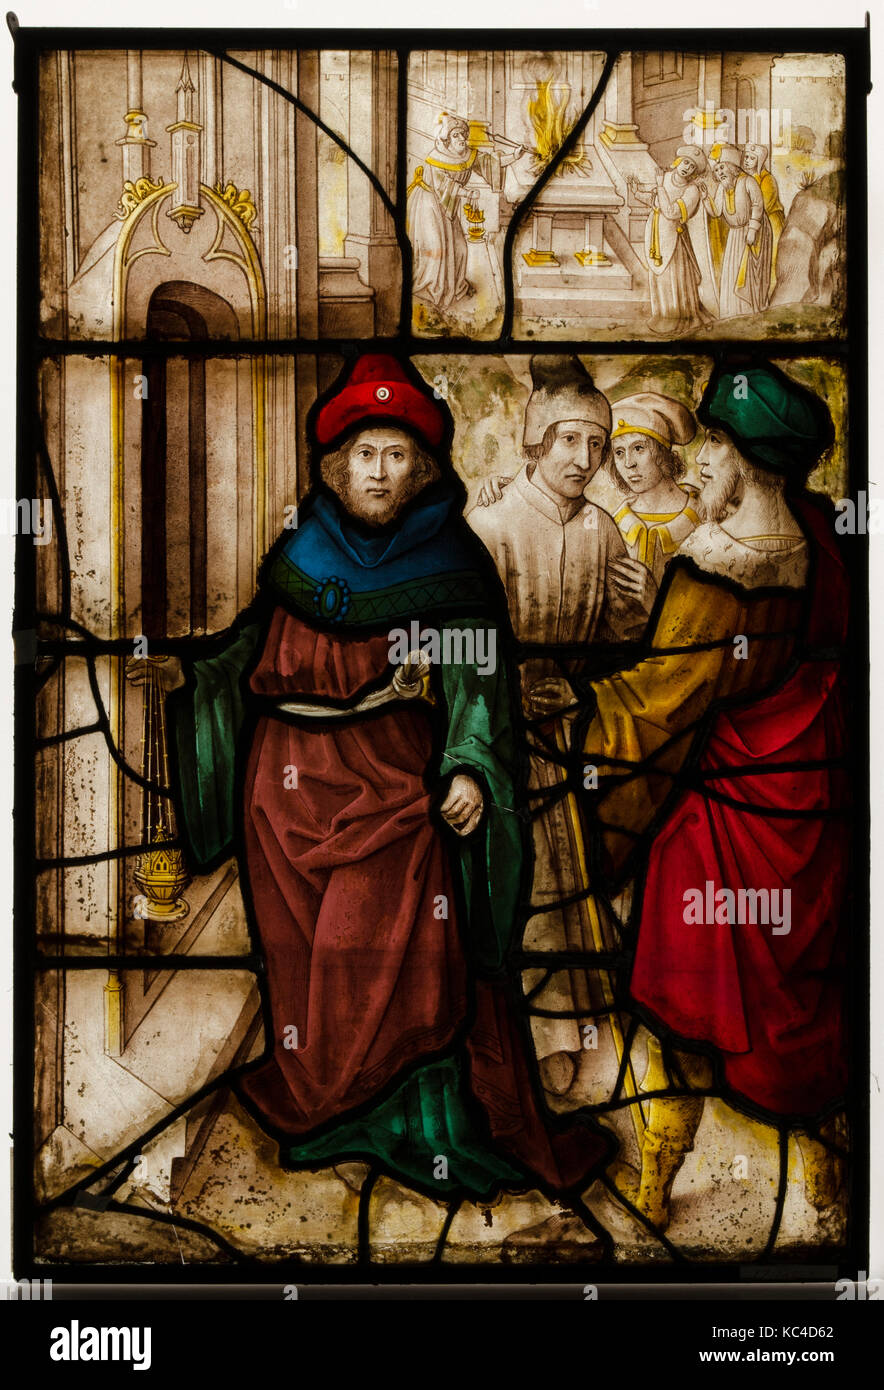 Il pannello di vetro con la profanazione di Gerusalemme e i sacri riti del tempio, del XVI secolo Foto Stock